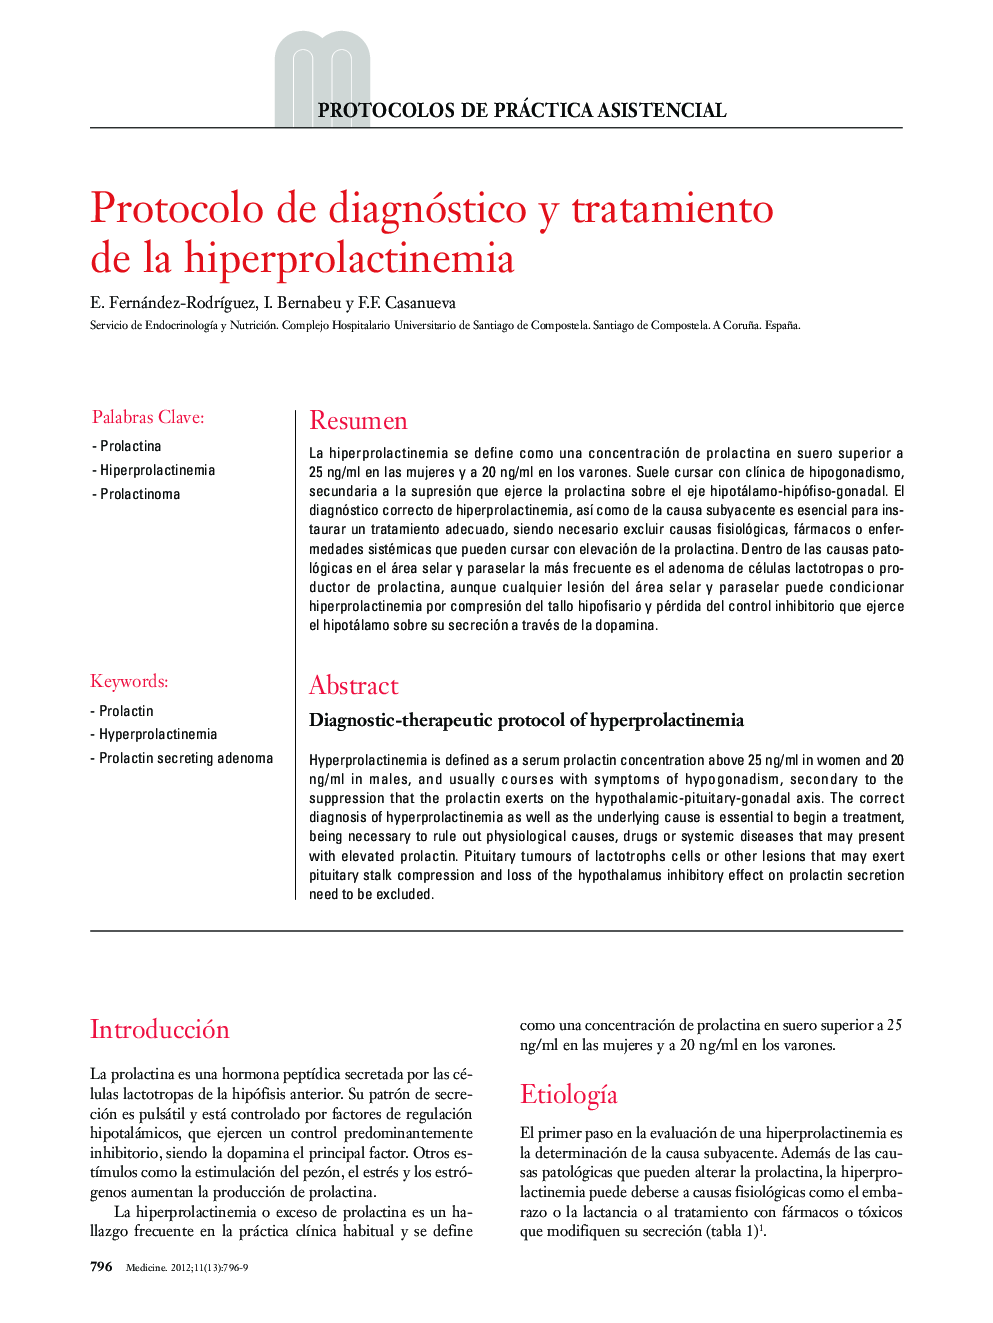 Protocolo de diagnóstico y tratamiento de la hiperprolactinemia